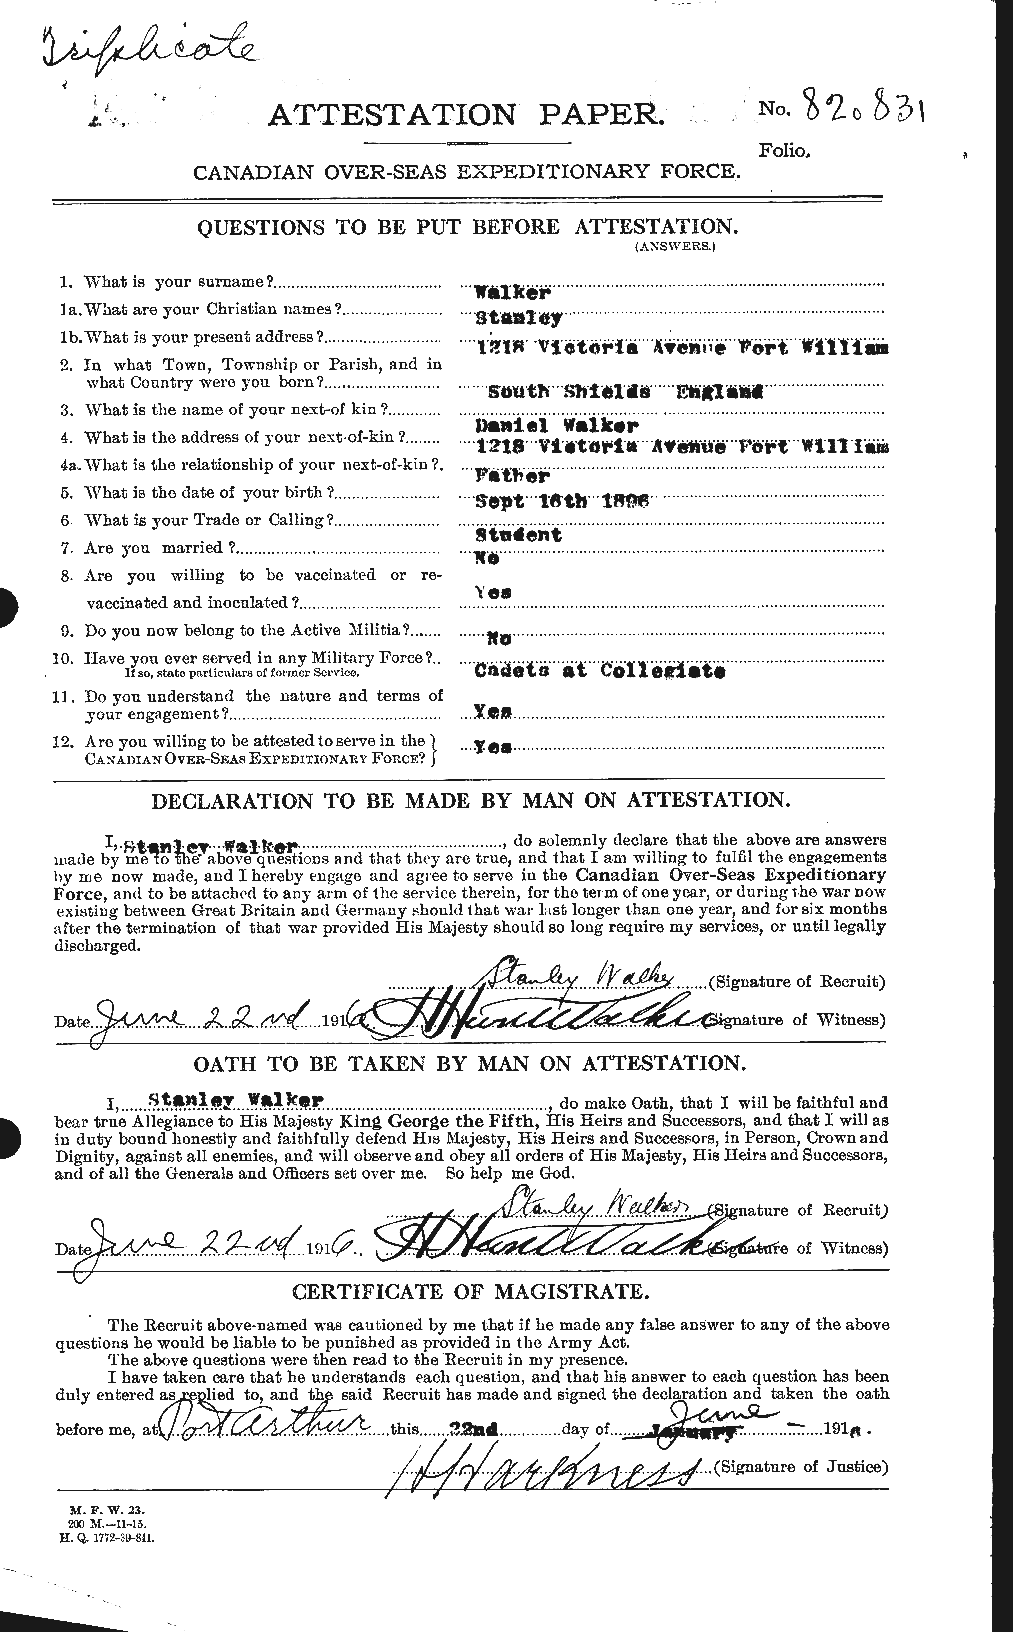 Dossiers du Personnel de la Première Guerre mondiale - CEC 655773a